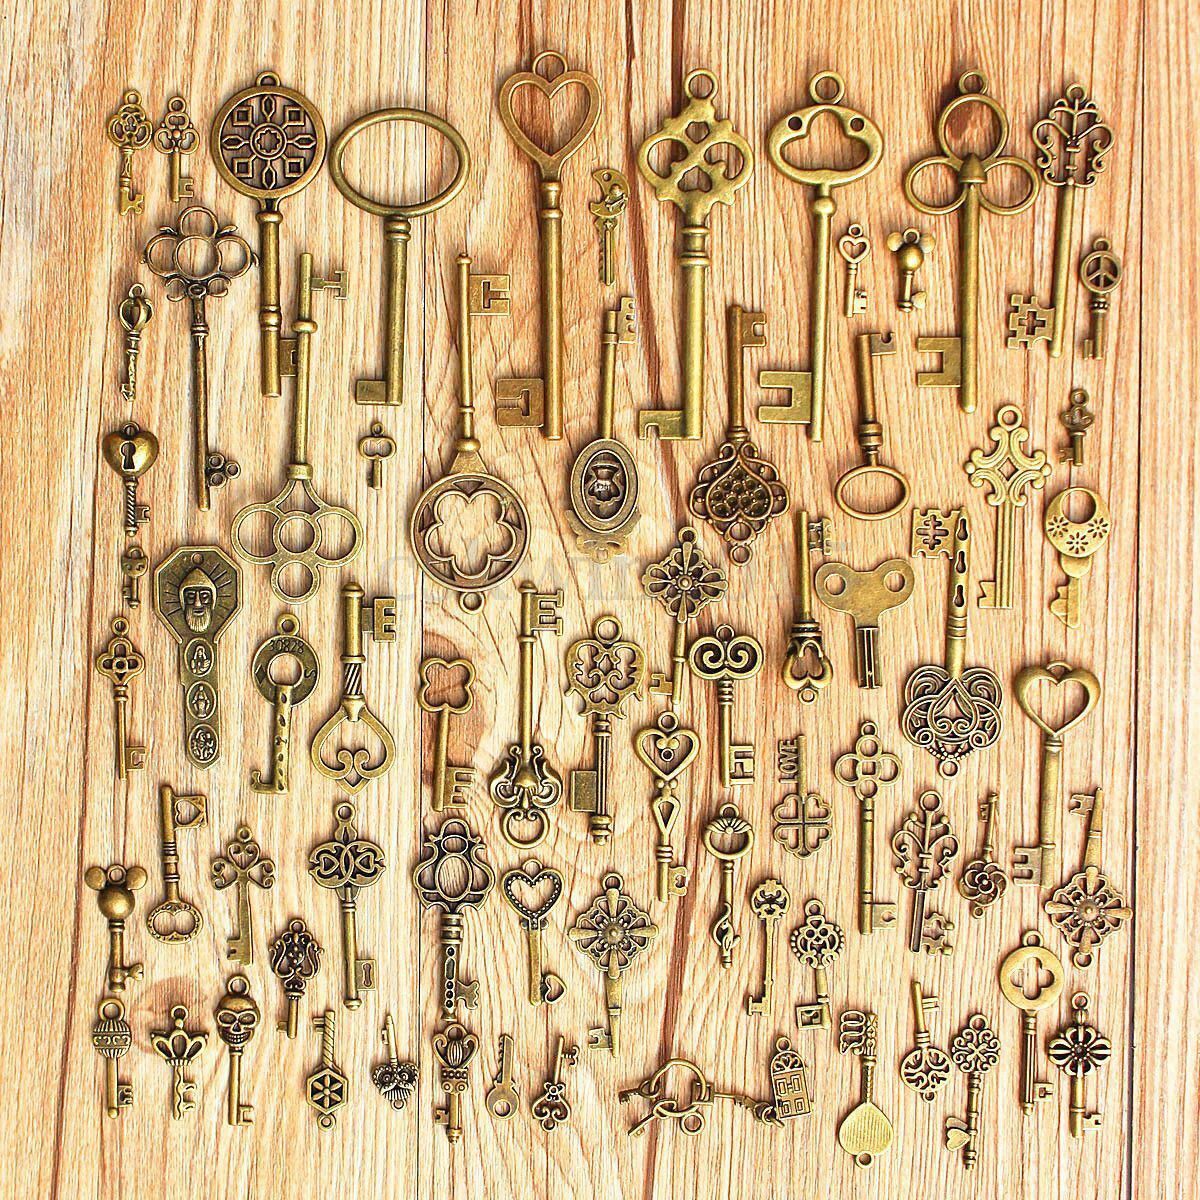 69 Pcs/Set Assorted Antique Vintage Old Look Skeleton Keys Heart Bow Pendant NKP